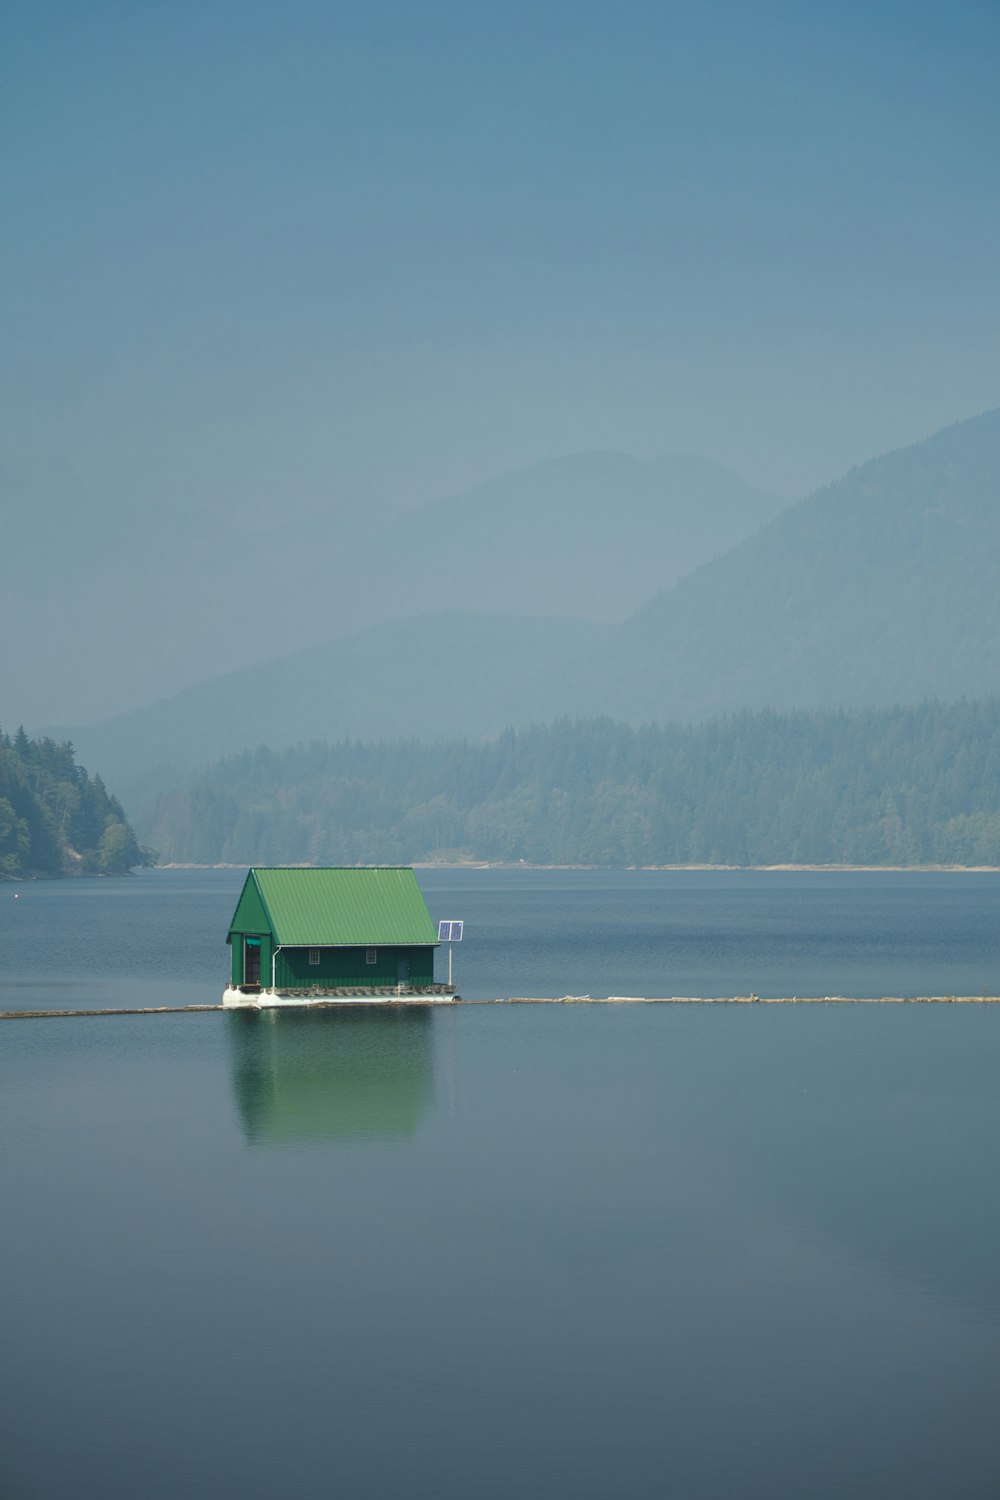 Casa verde y blanca en el lago durante el día